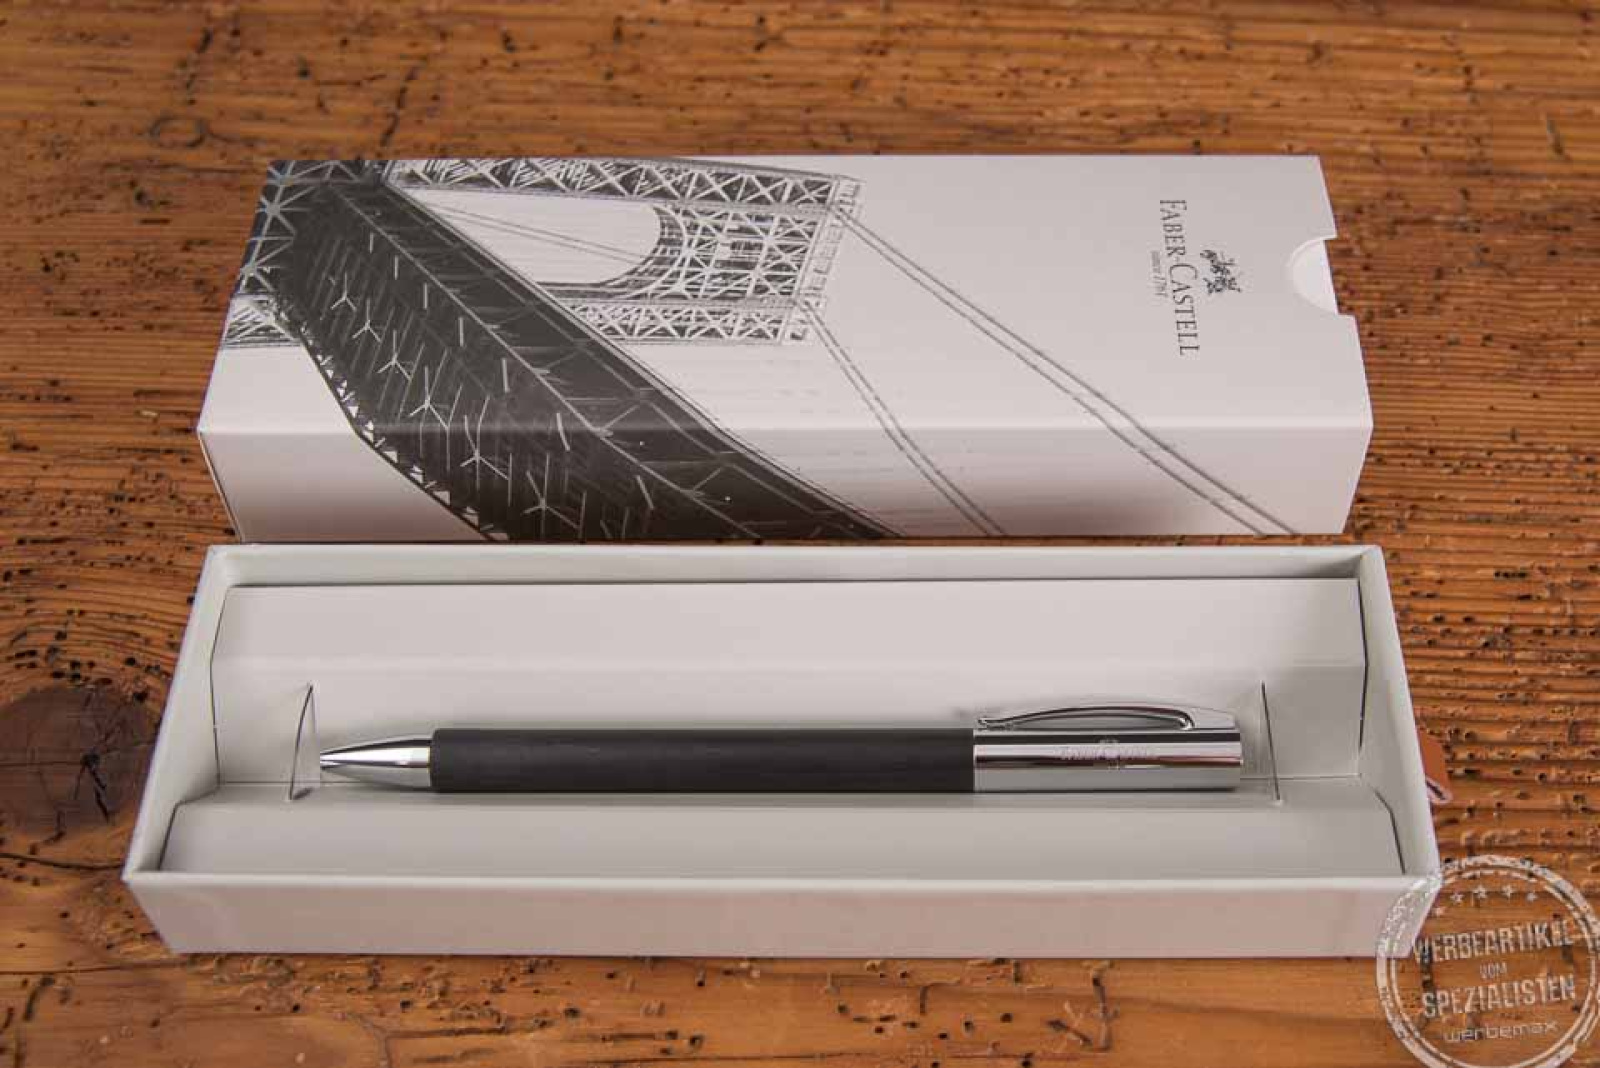 Faber-Castell Ambition Kugelschreiber als stilvolles Werbegeschenk in Verpackung